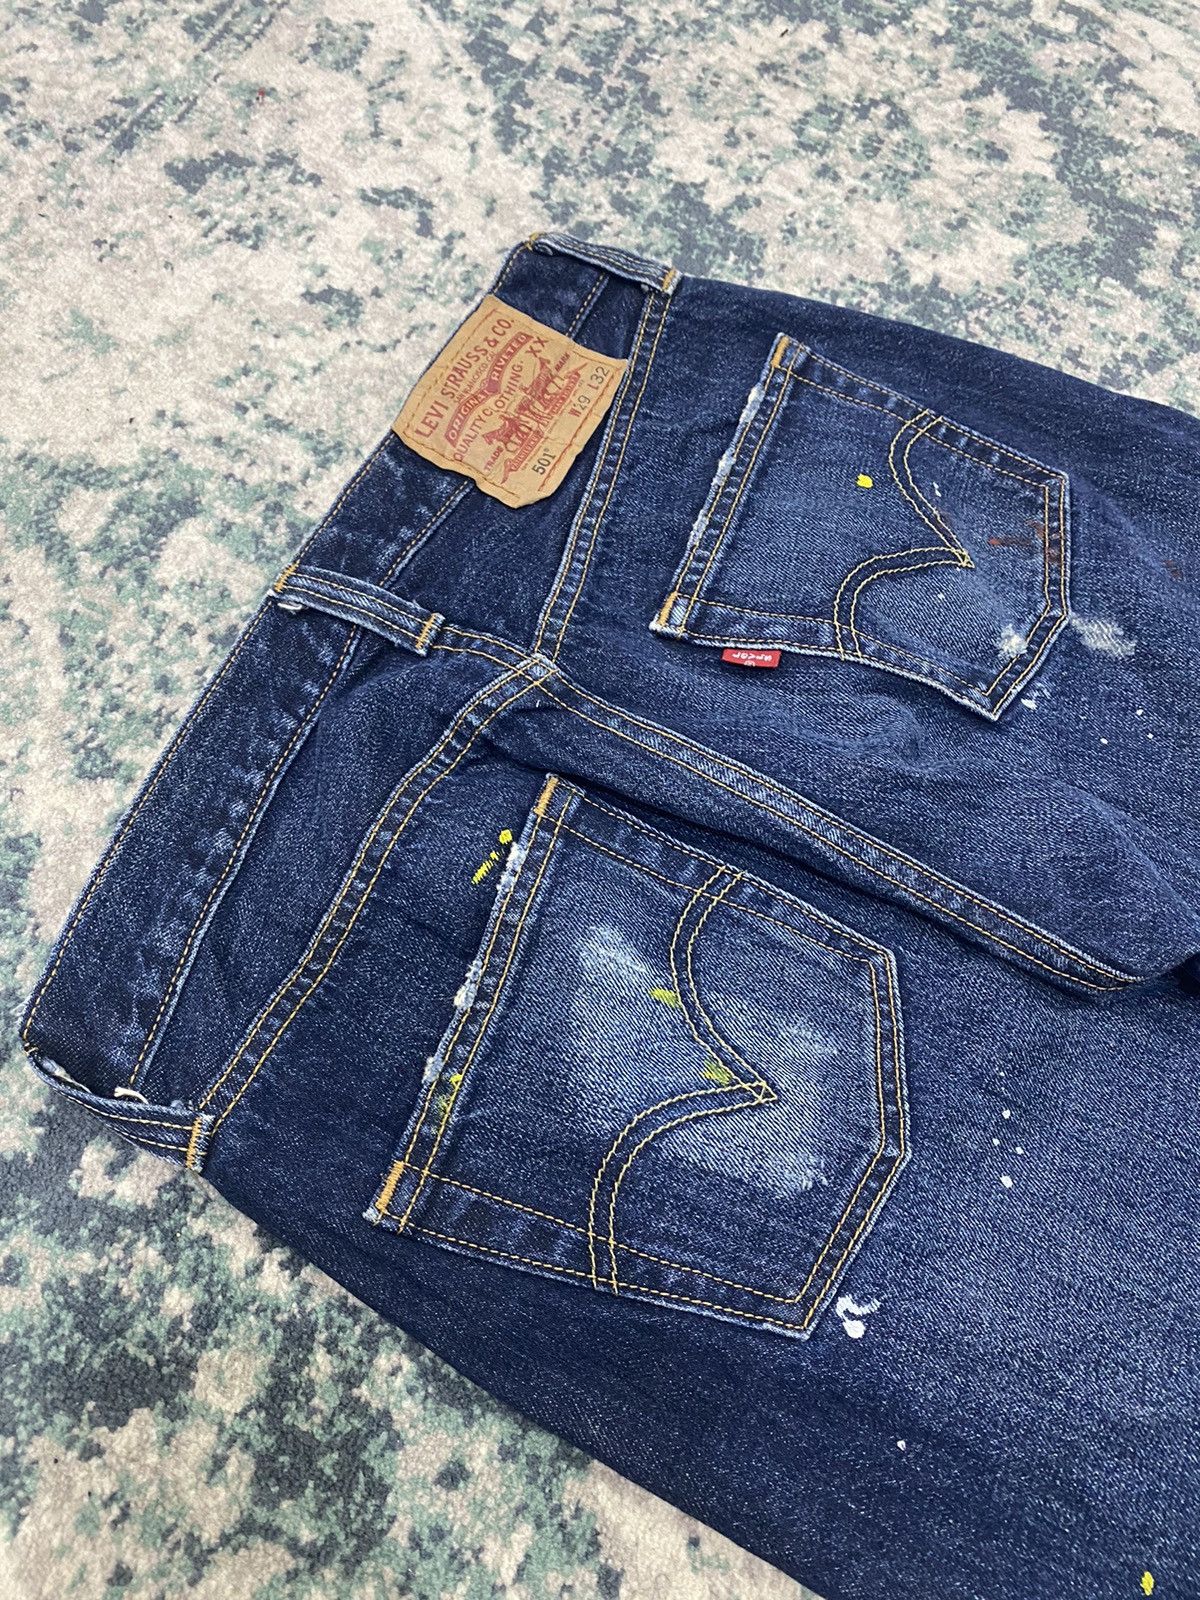 Levi’s Original Paint Splatter Limited Edition Jeans - 15